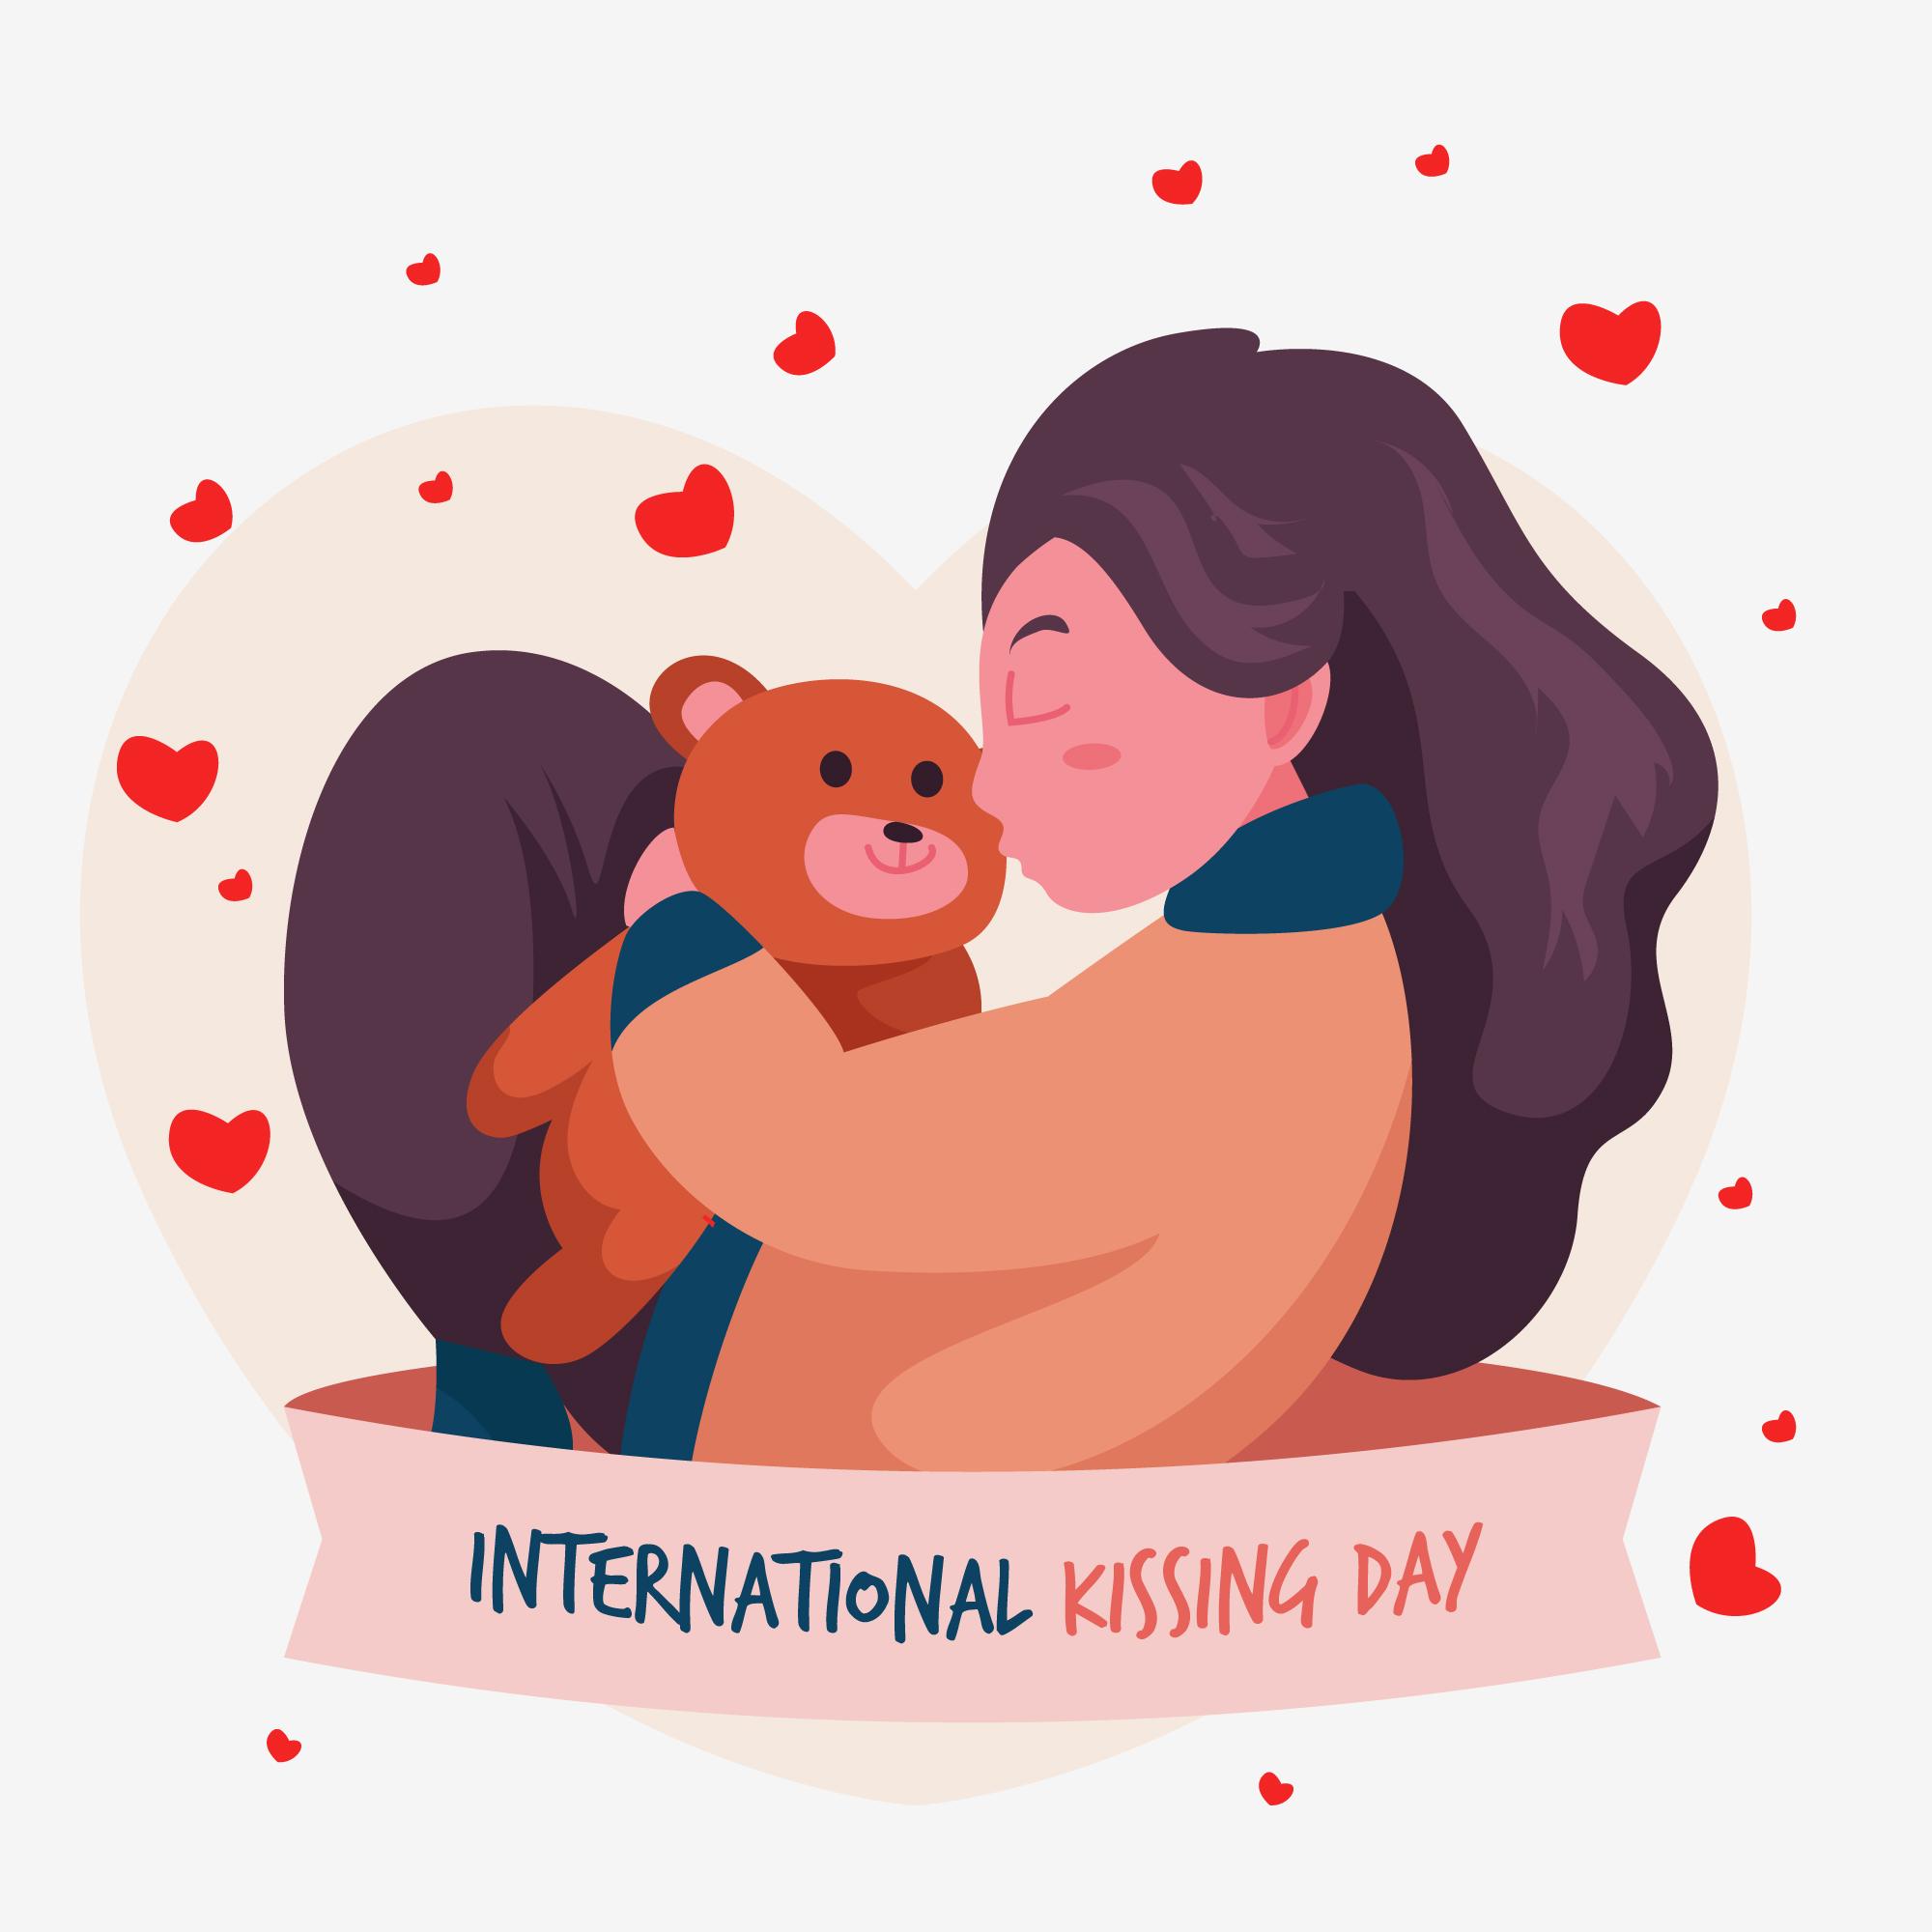 国际接吻日女孩亲吻玩具熊插图0